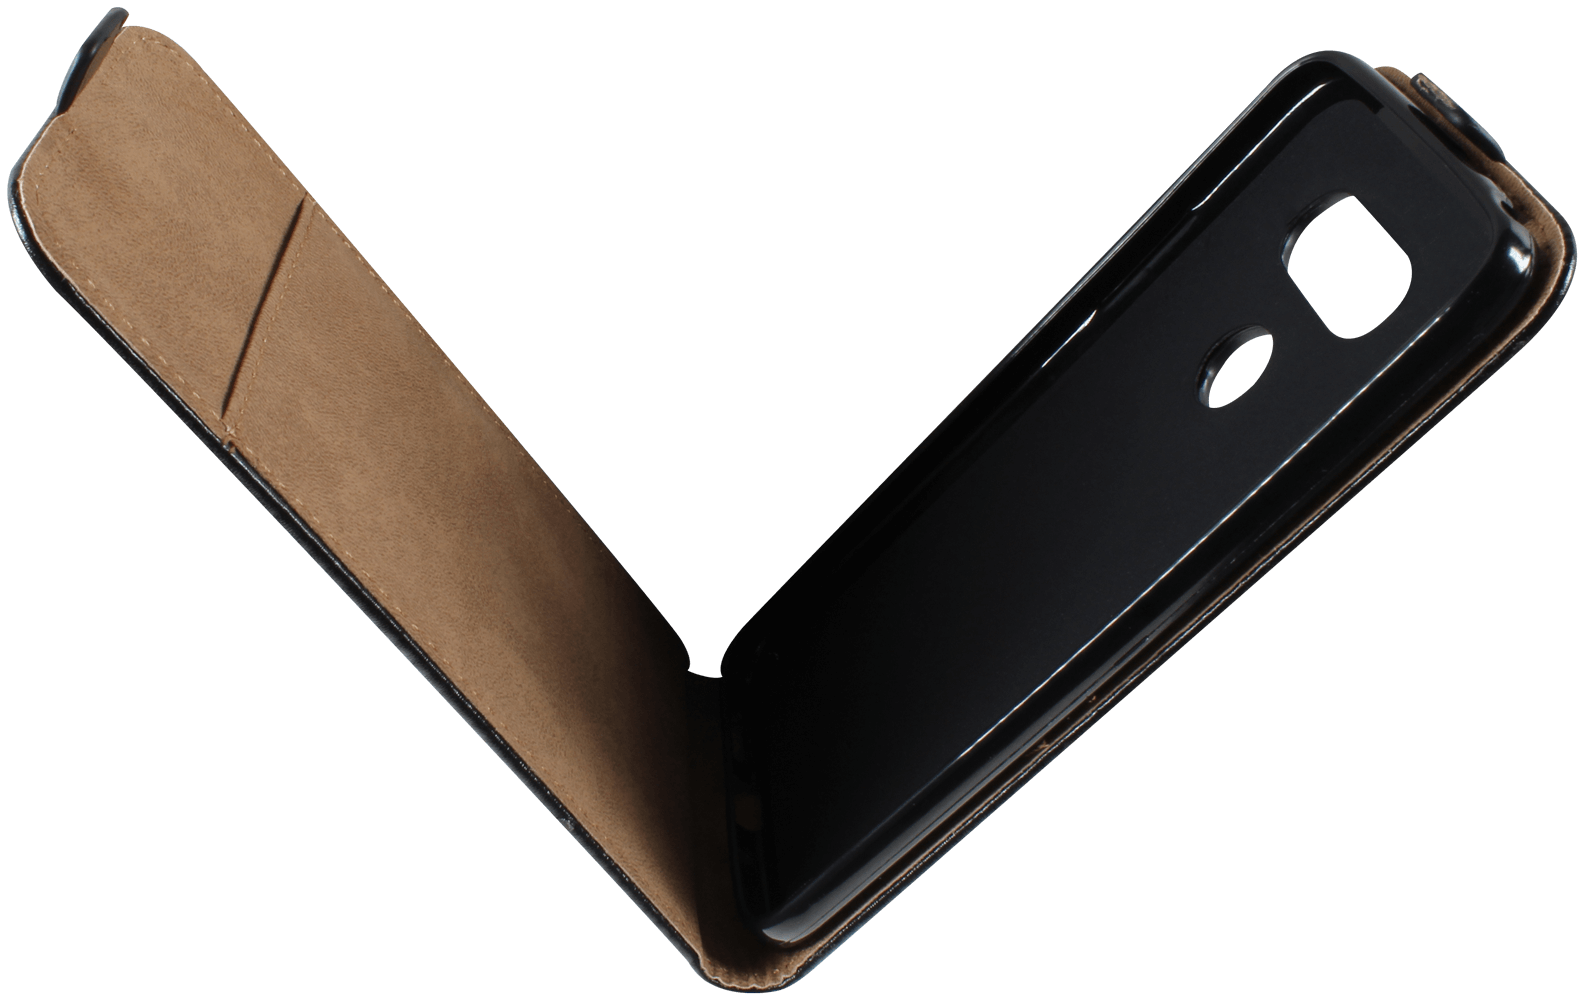 LG G5 SE (H840) lenyíló flipes bőrtok fekete